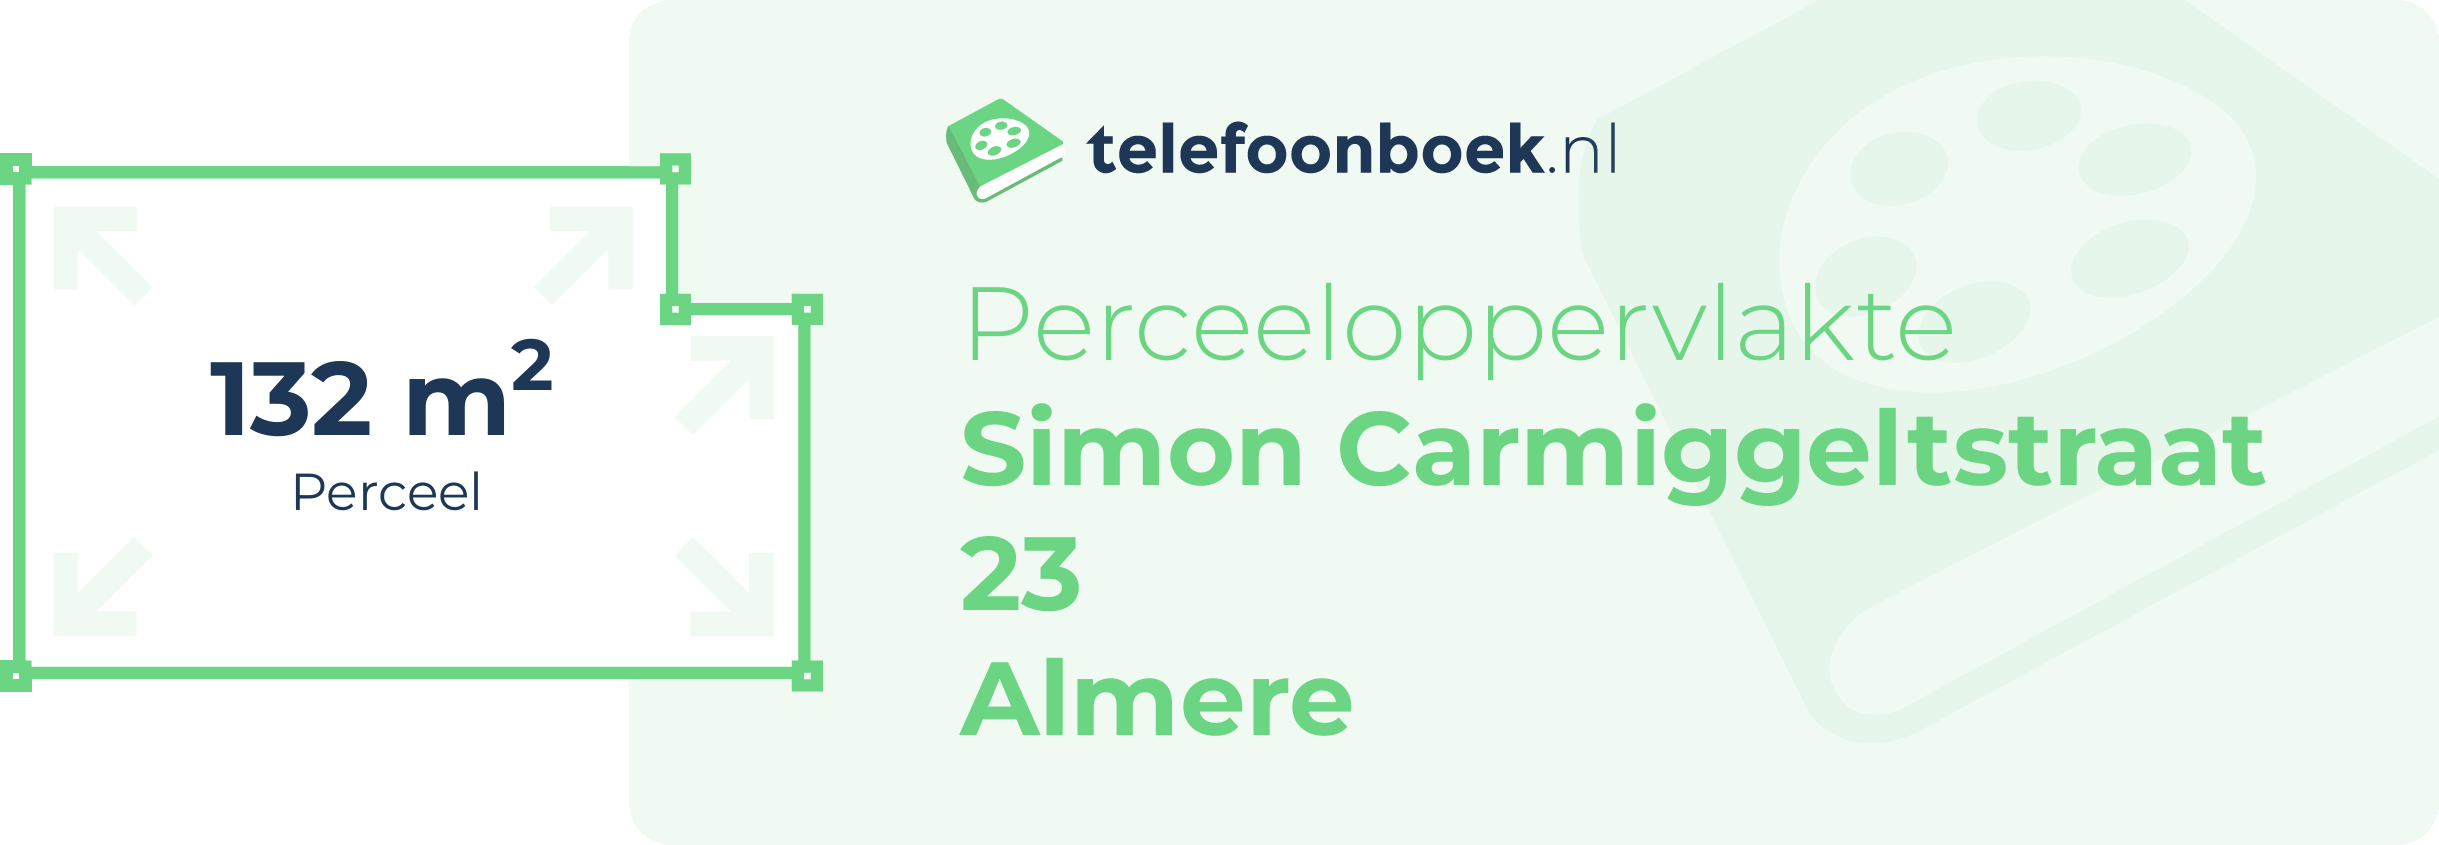 Perceeloppervlakte Simon Carmiggeltstraat 23 Almere